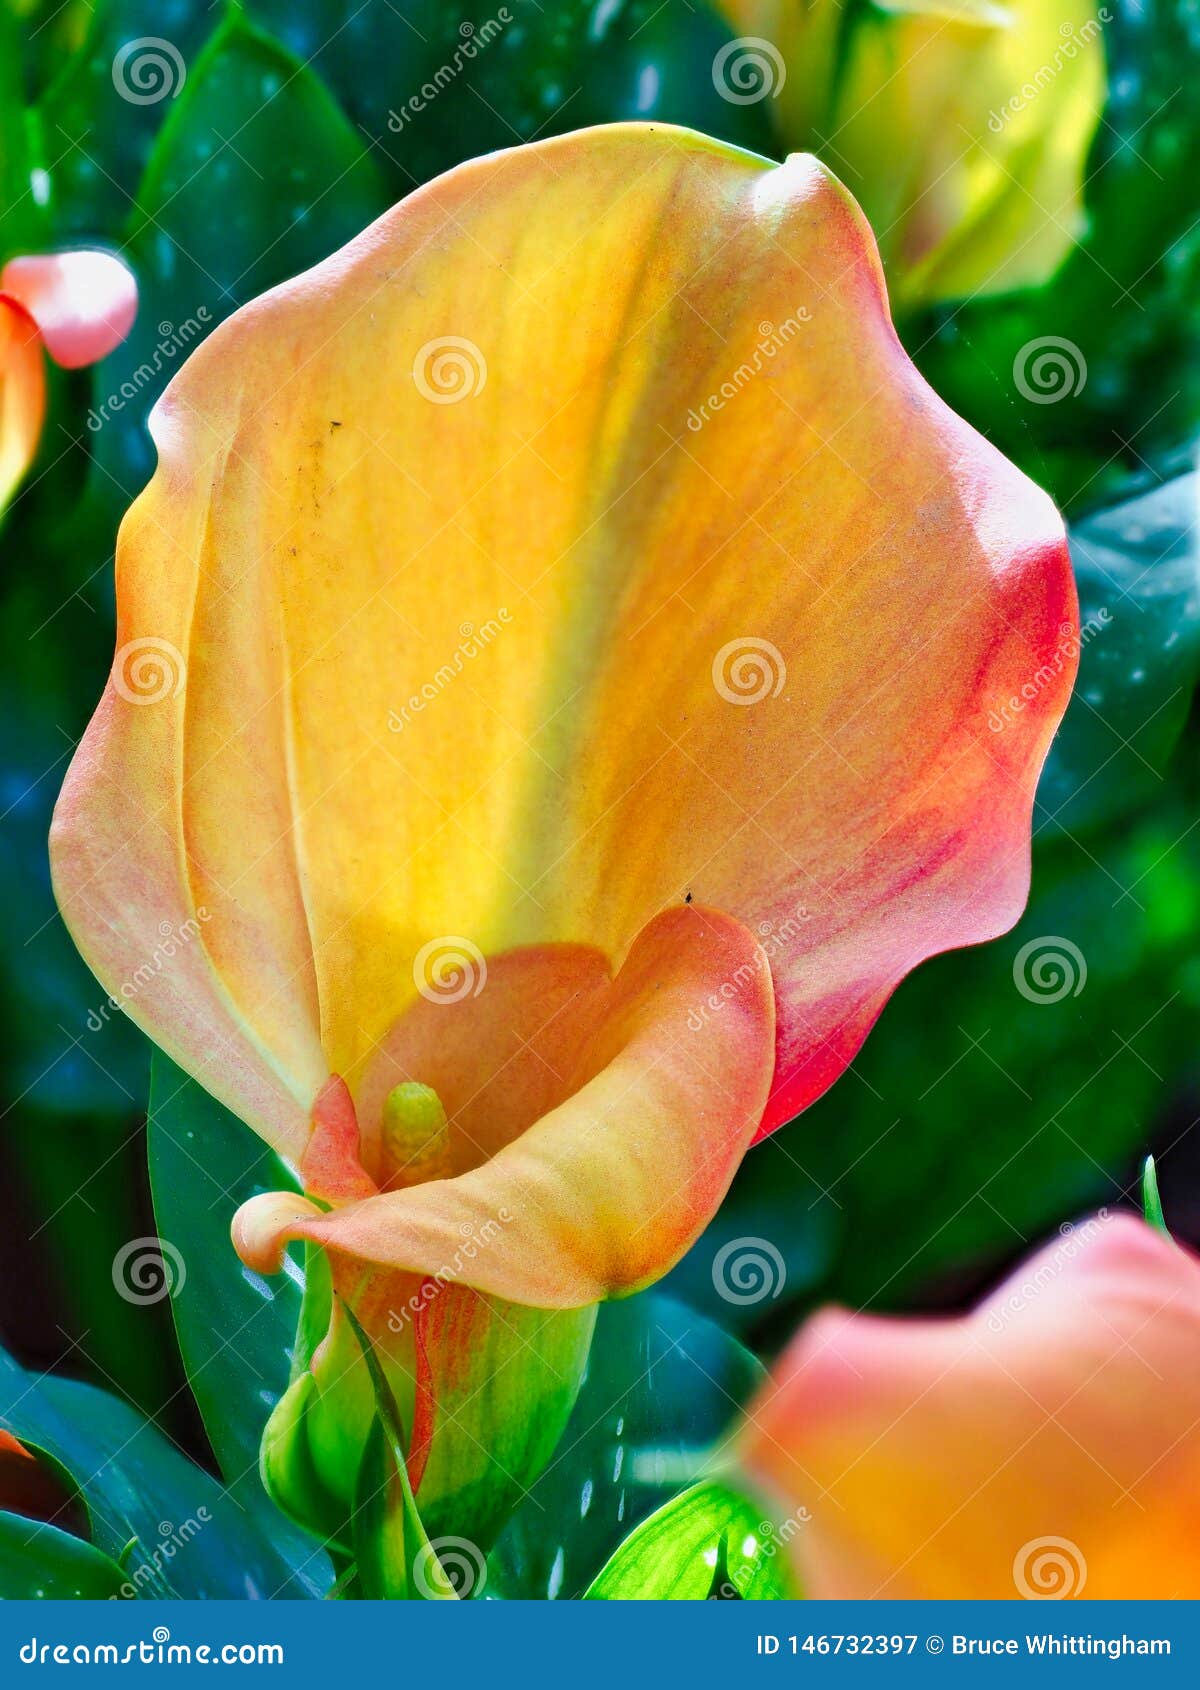 Orange Calla Lilies in Garden Stock Image - Image of calla, garden ...